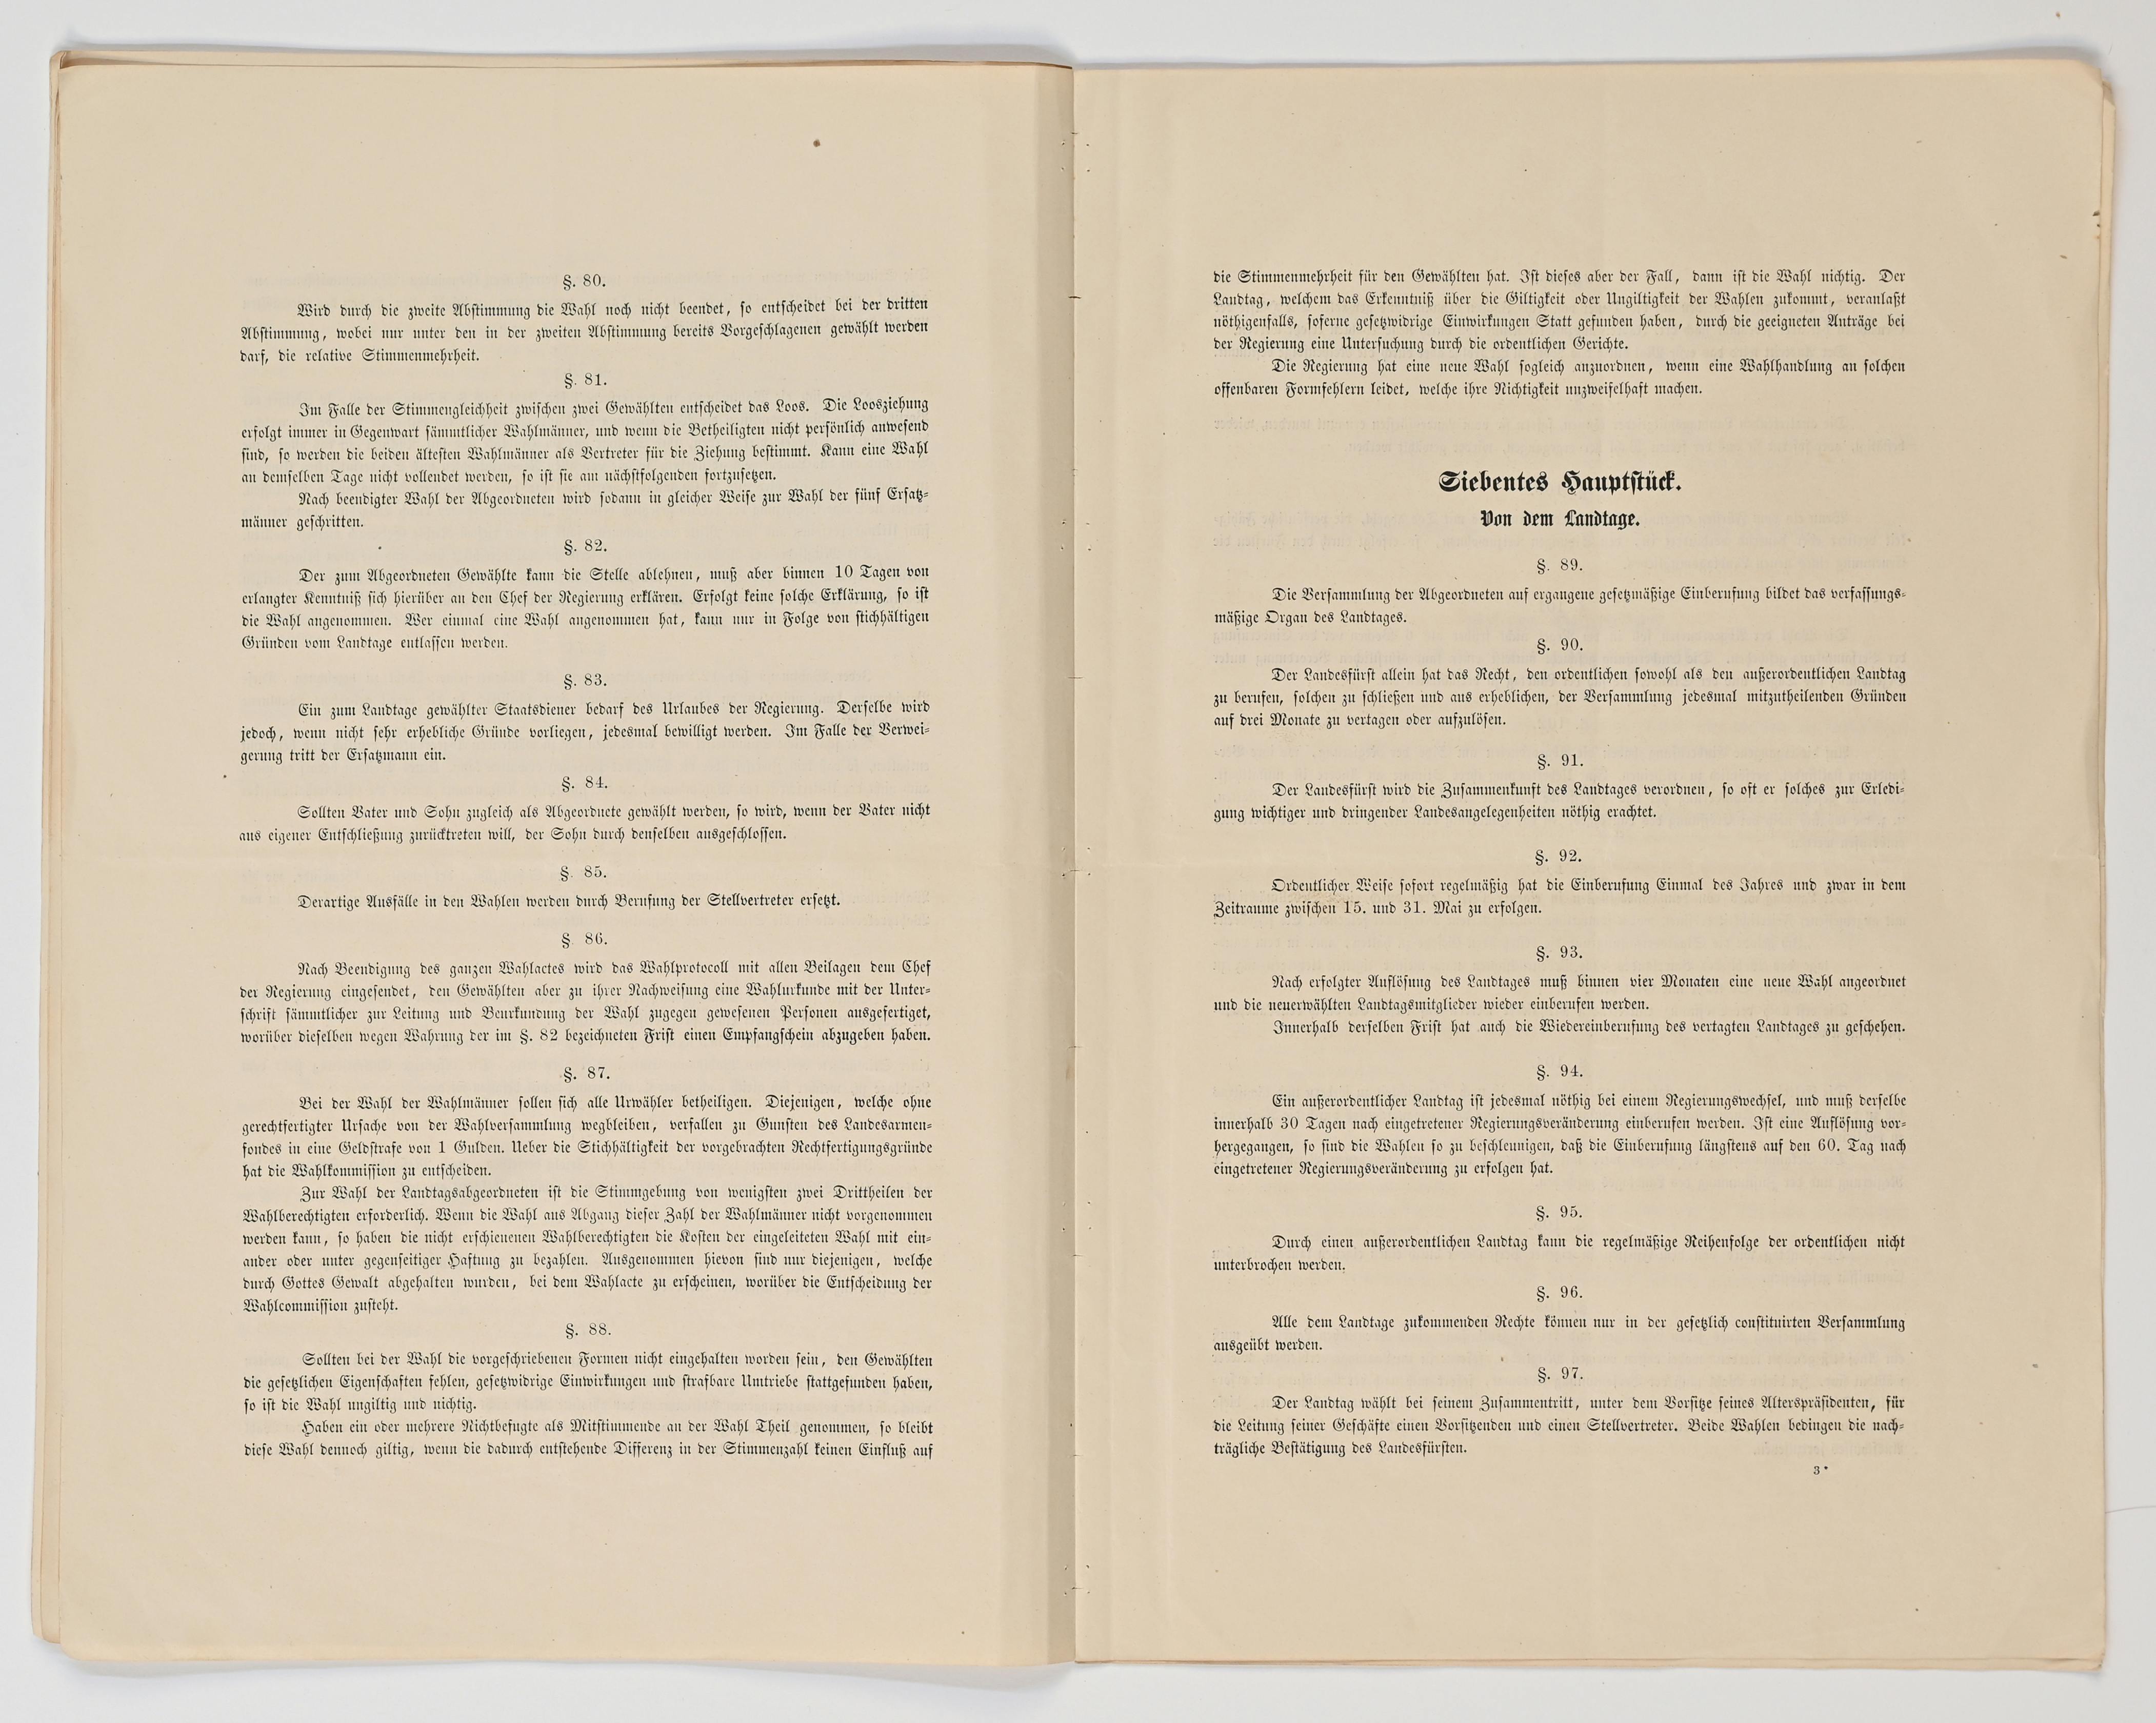 Konstitutionelle Verfassung 1862 § 80 bis § 97